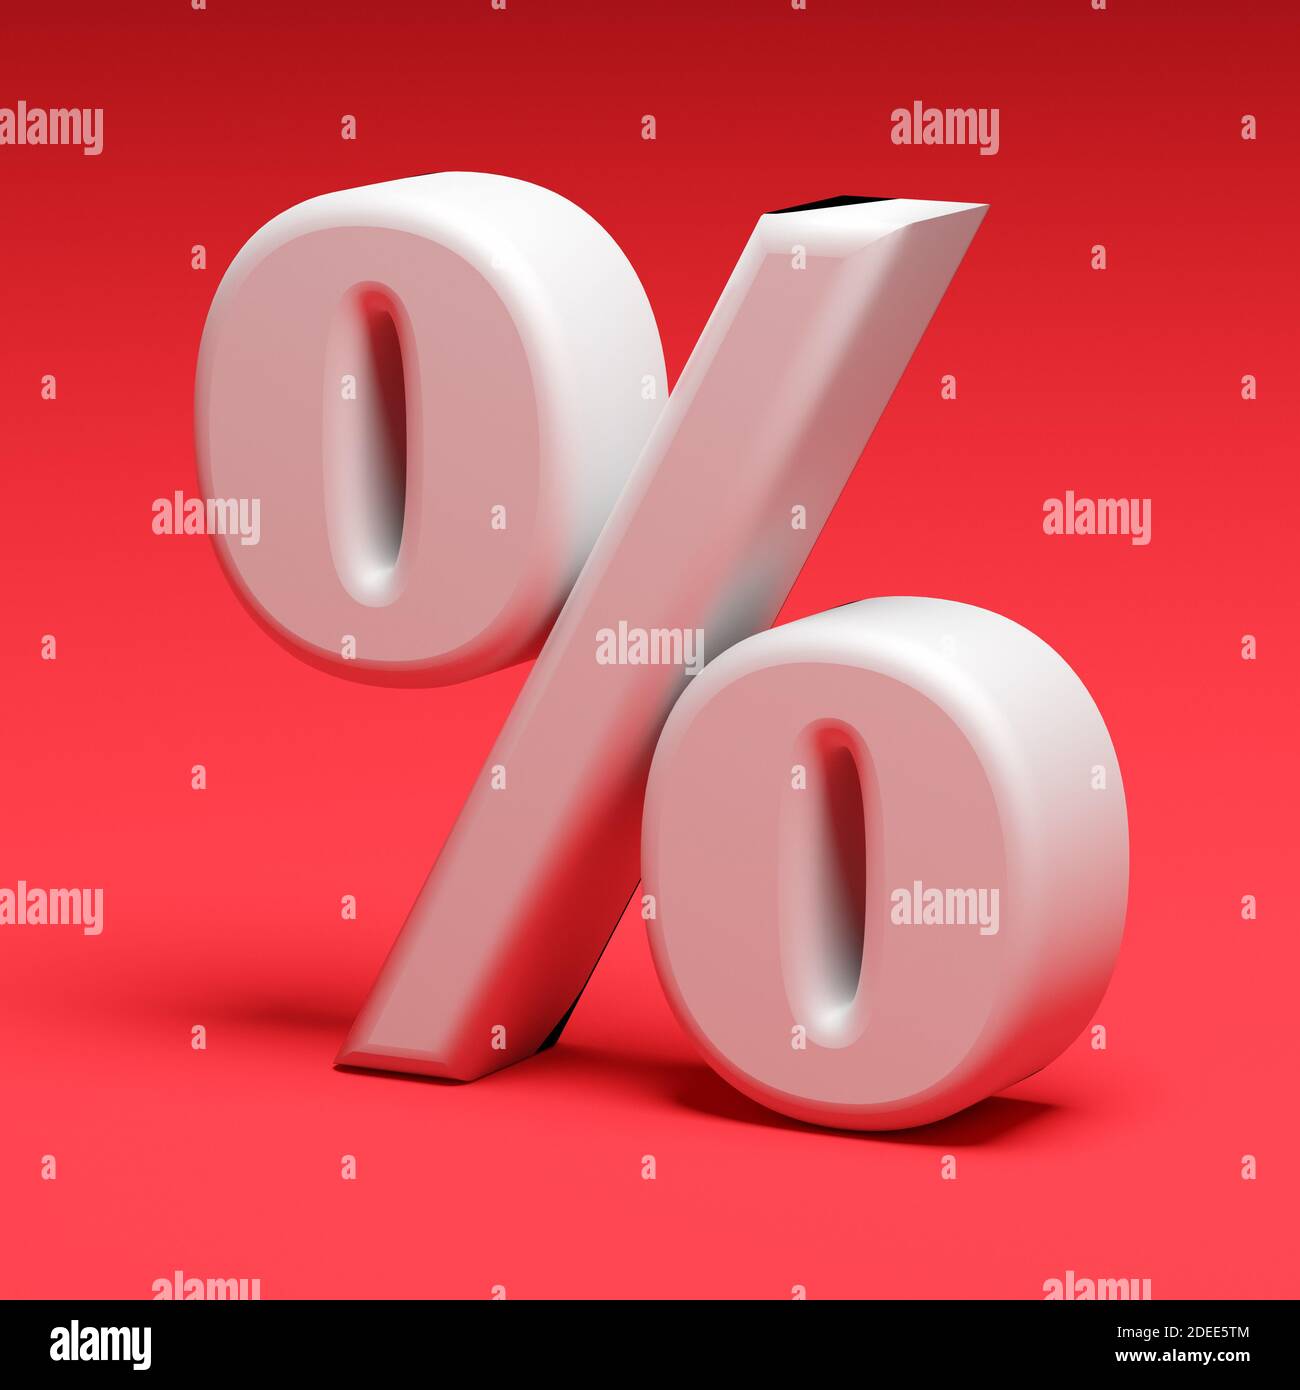 Segno percentuale su baclground rosso. Concetto aziendale. rendering 3d Foto Stock